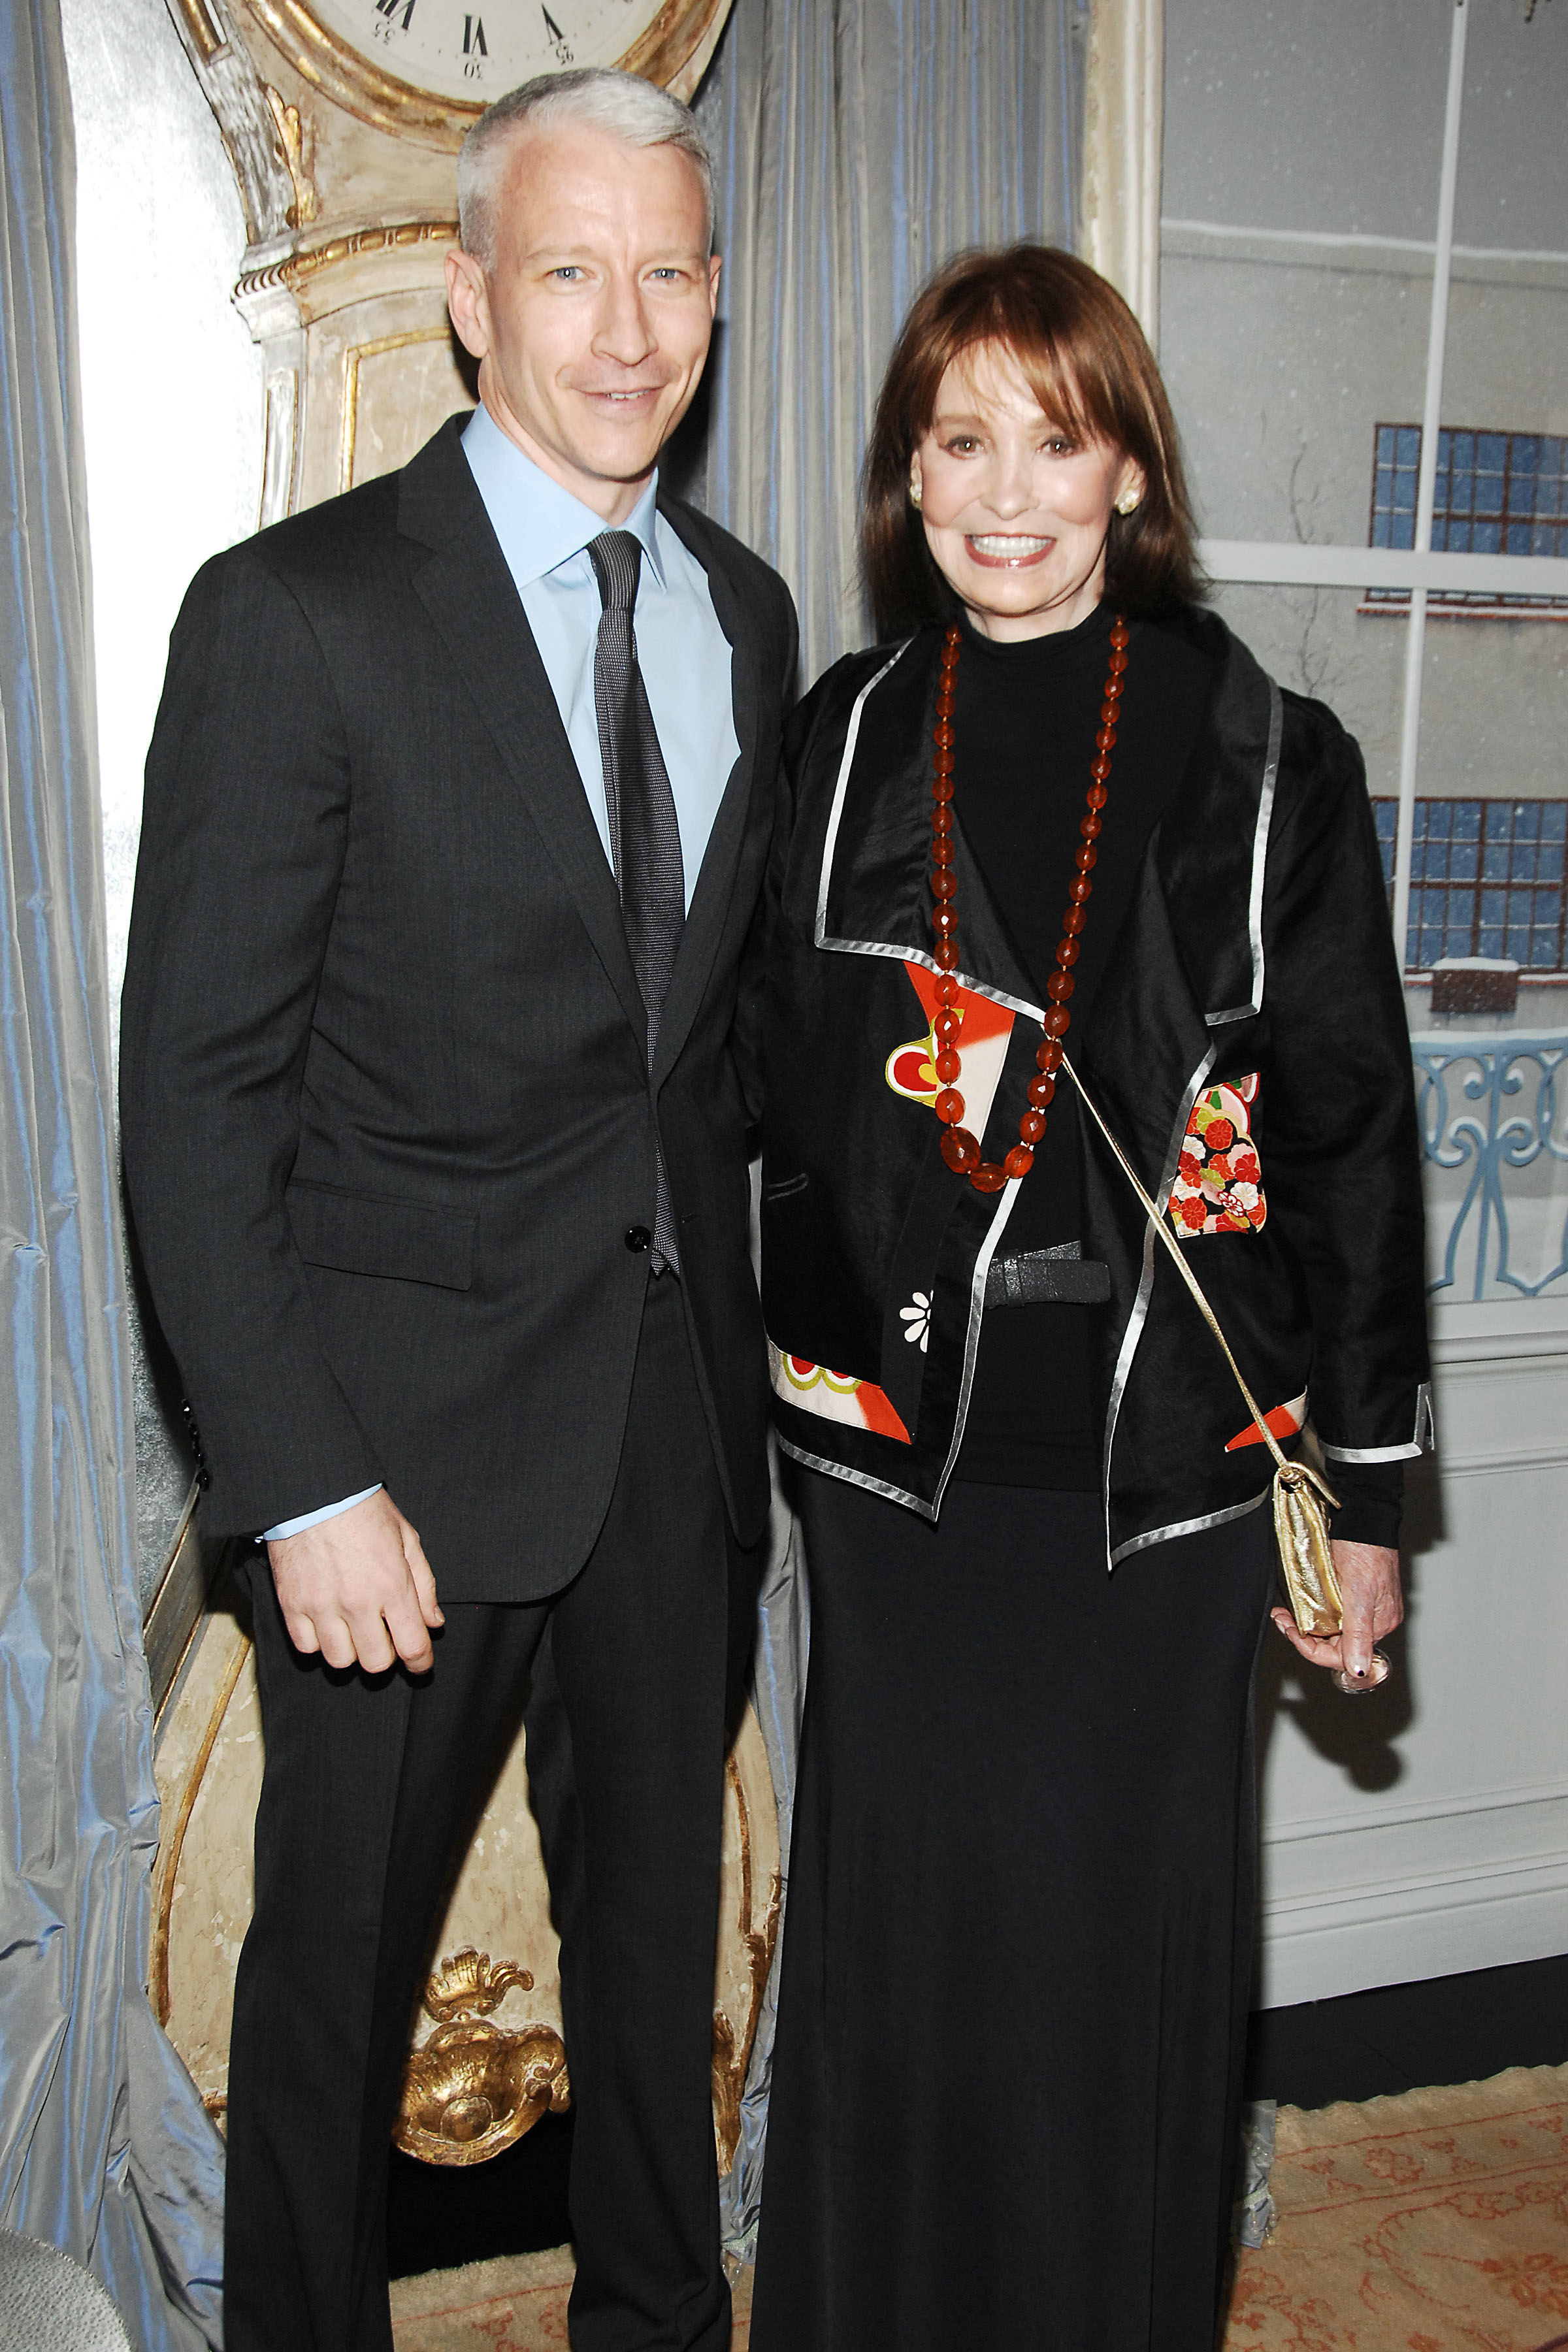 Anderson Cooper and Gloria Vanderbilt standing together